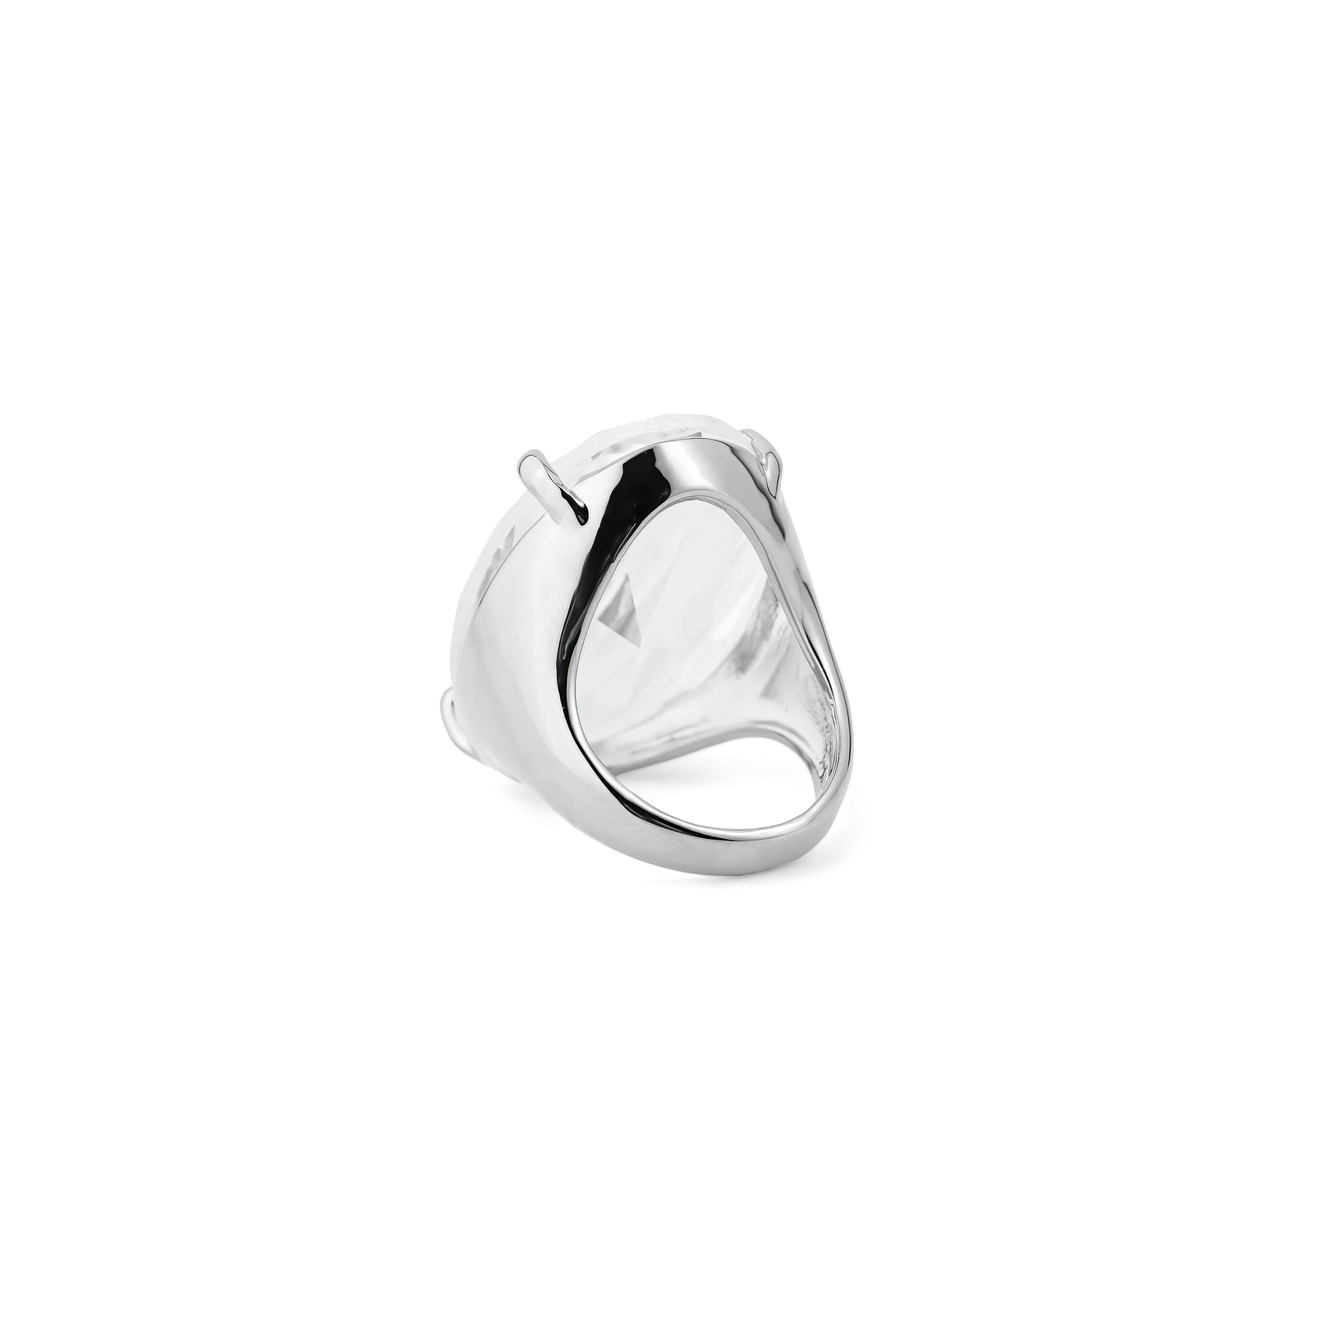 Herald Percy Серебристое кольцо с овальным кристаллом herald percy серебристое фигурное кольцо с зеленым сердцем